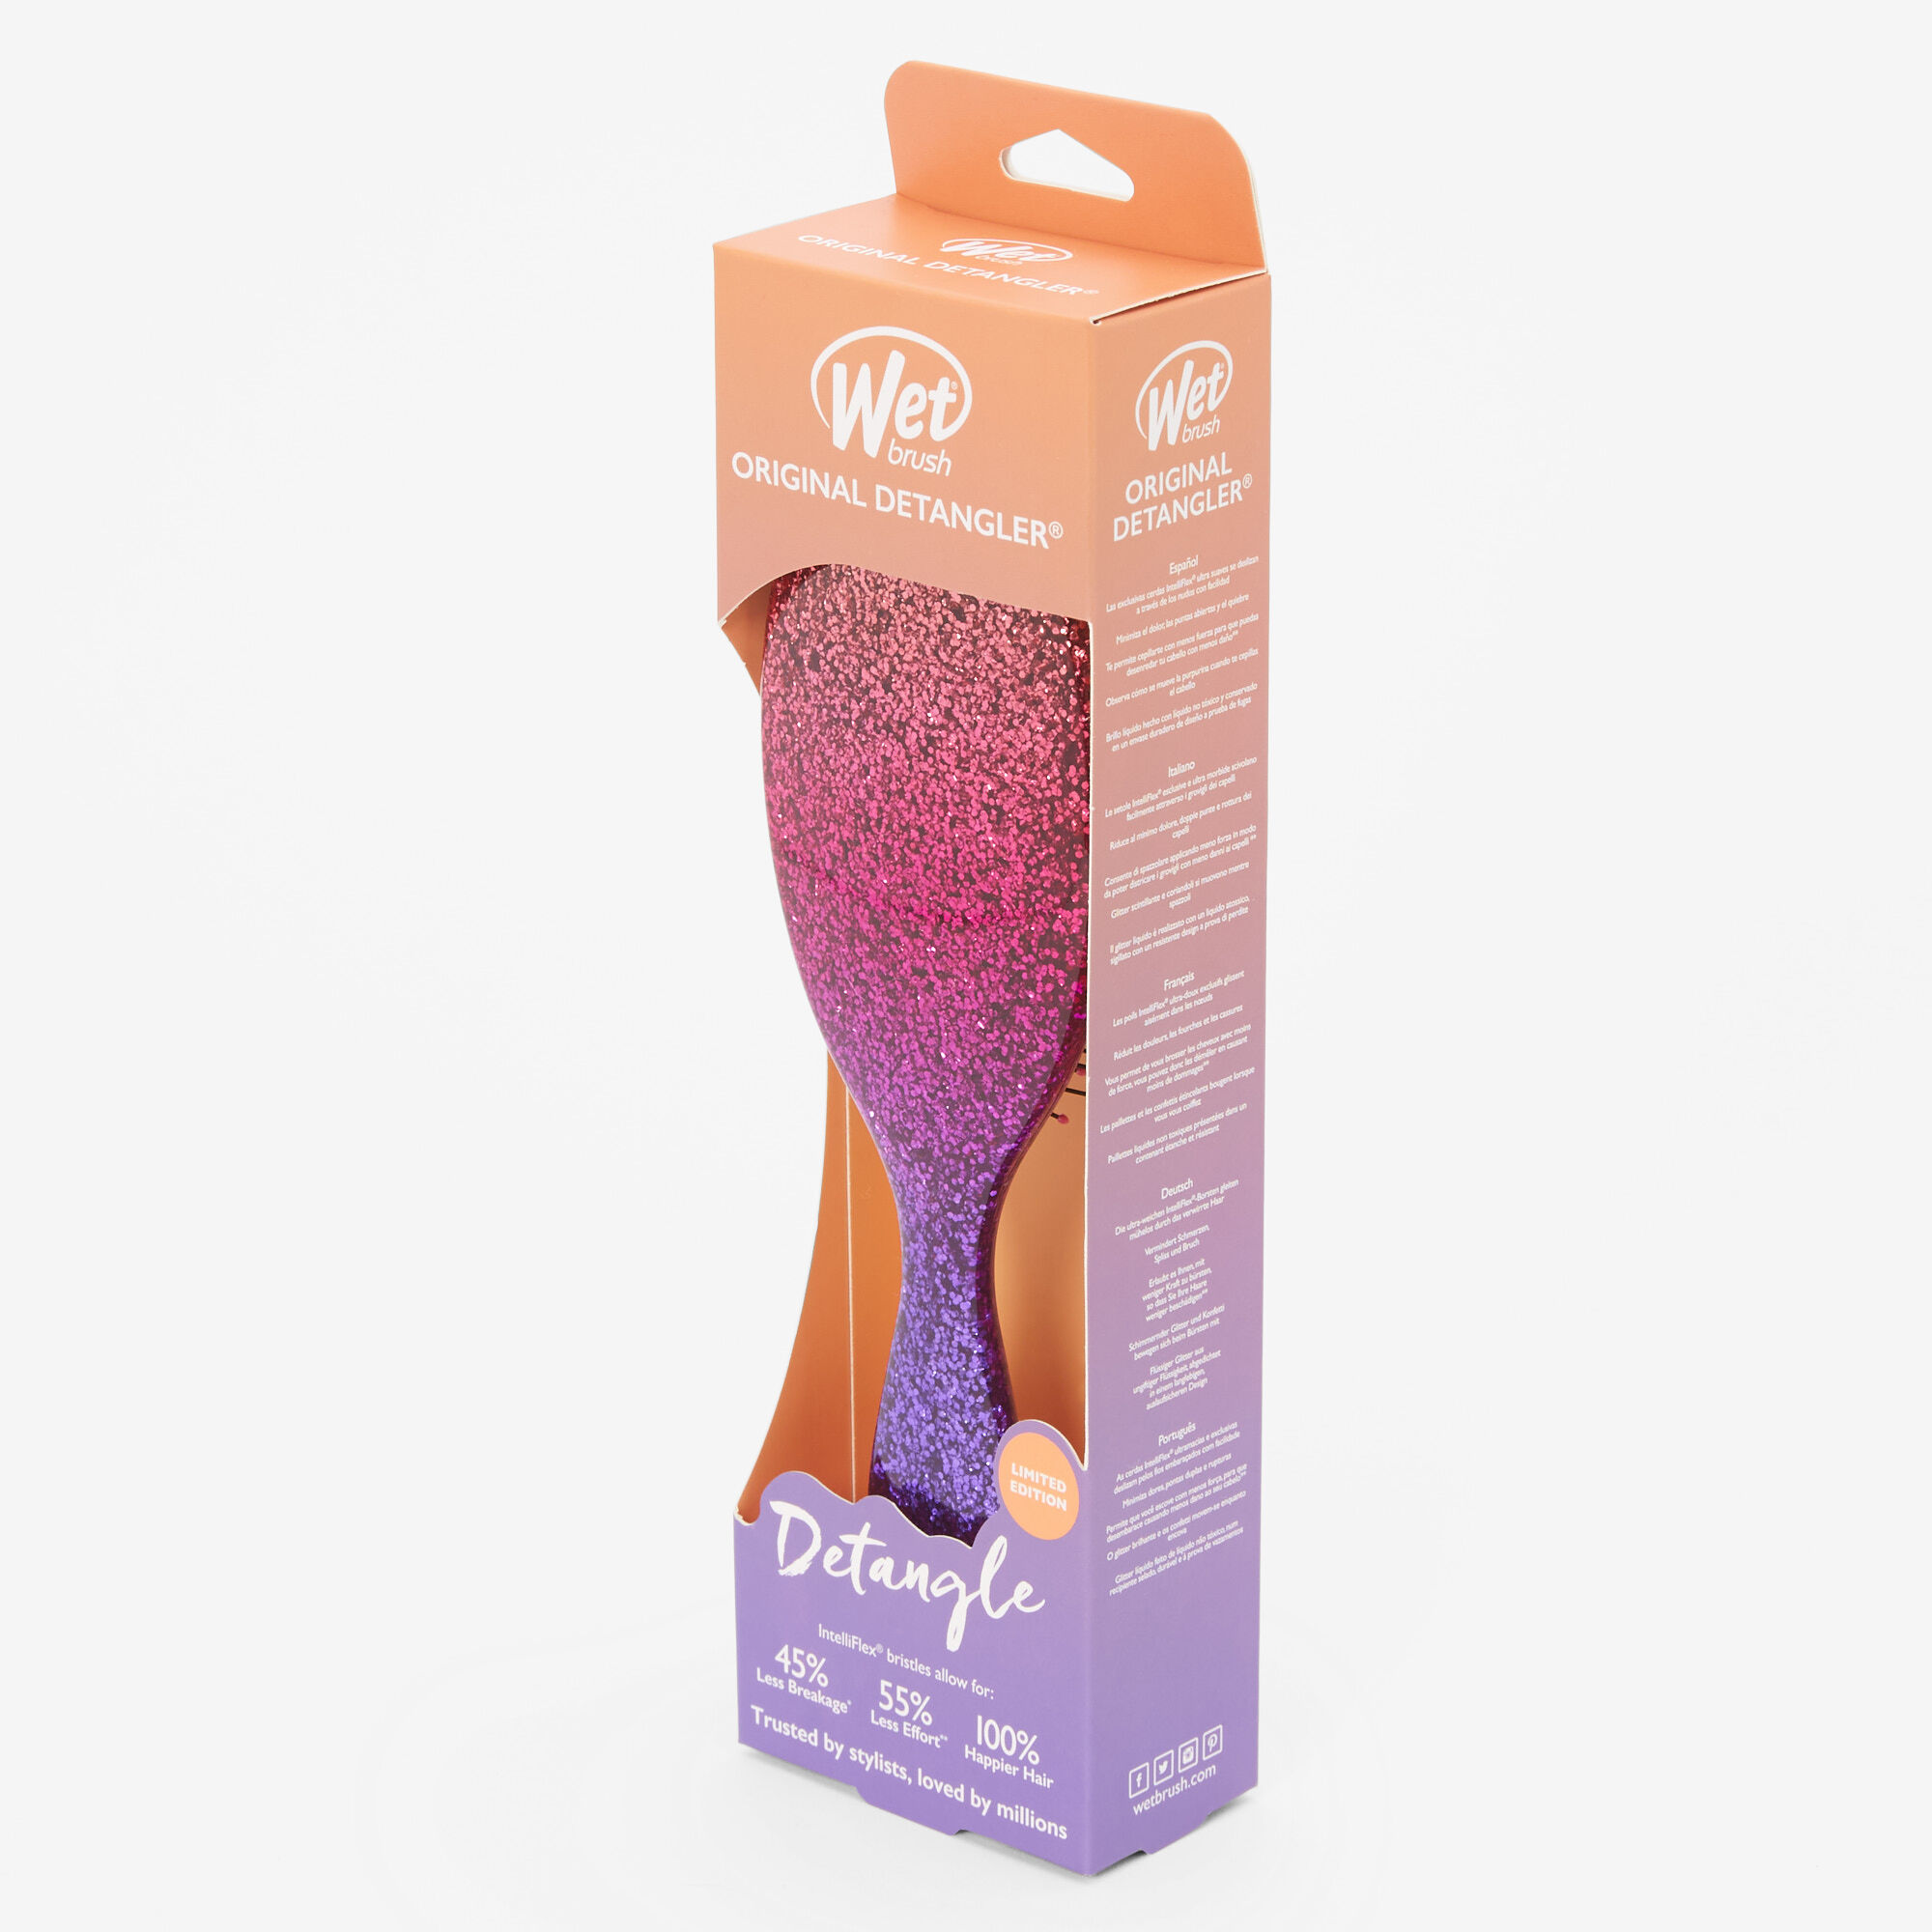 Wet Brush® Limited Edition Original Detangler - Glitter